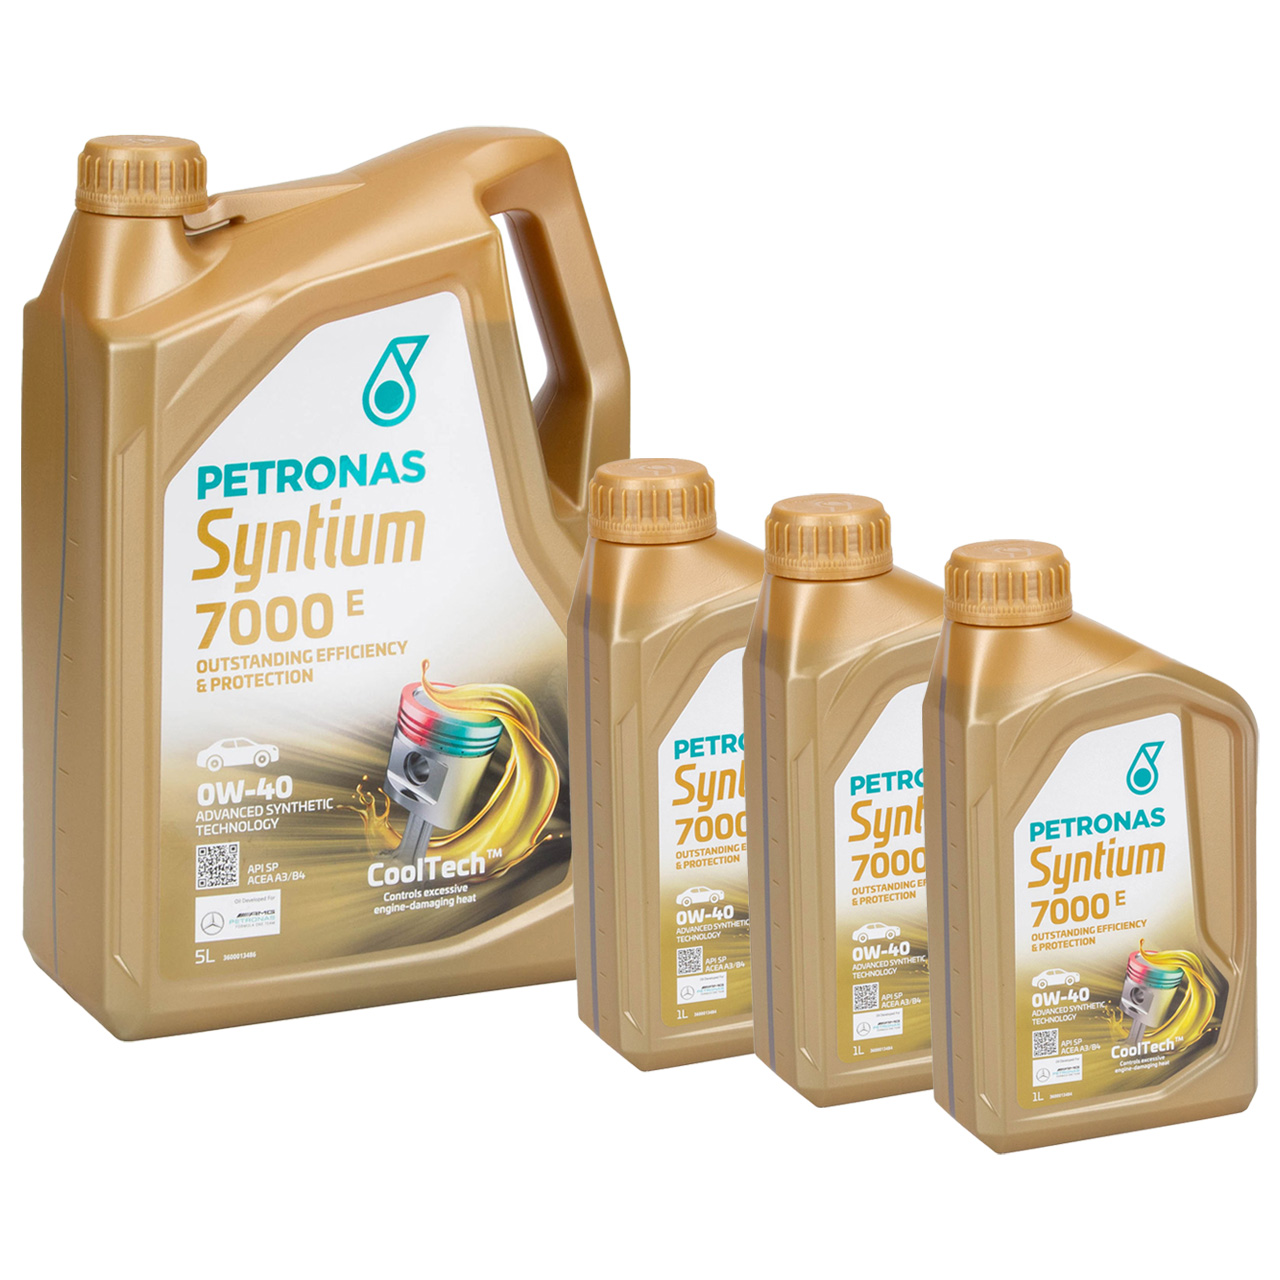 8L 8 Liter PETRONAS Syntium 7000 E 0W-40 Motoröl Öl BMW LL-01 MB 229.5 VW 502/505.00